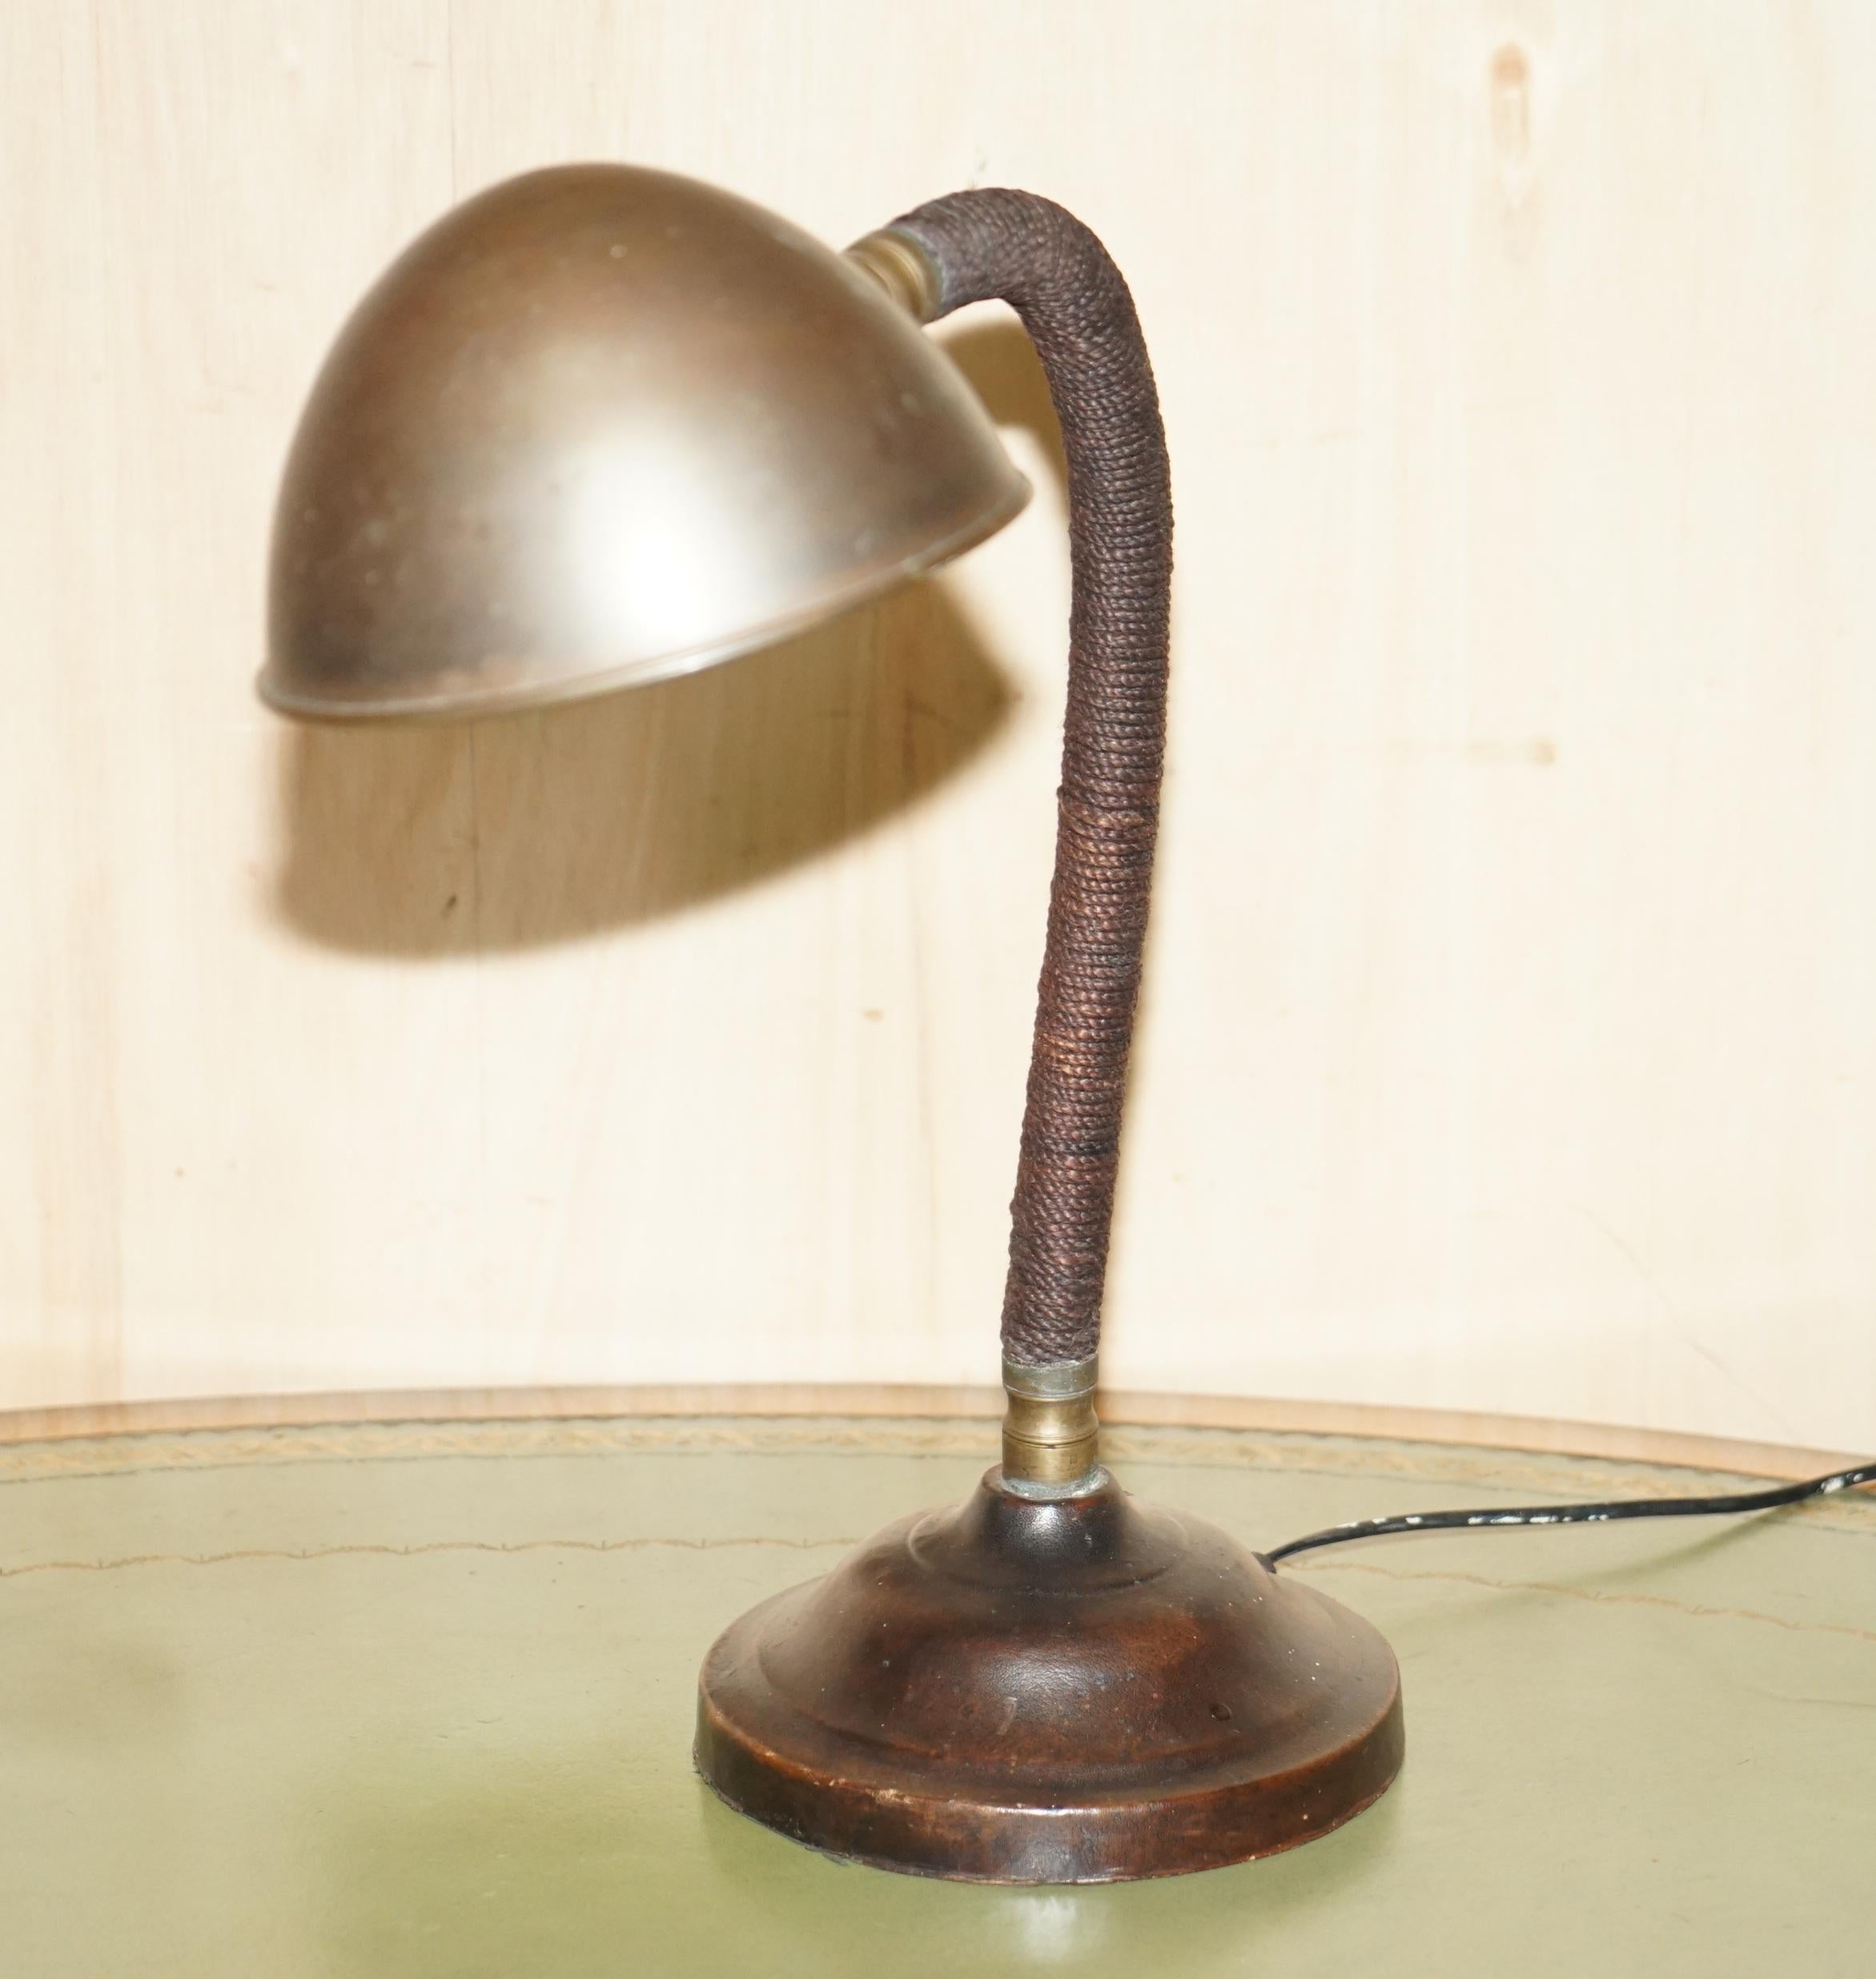 Nous sommes ravis d'offrir à la vente cette superbe lampe de banquier Art Deco circa 1930 en laiton avec finition bronzée, avec base en cuir cousue à la main et corps en corde tressée.

Une très belle pièce décorative, je n'en ai jamais vu de